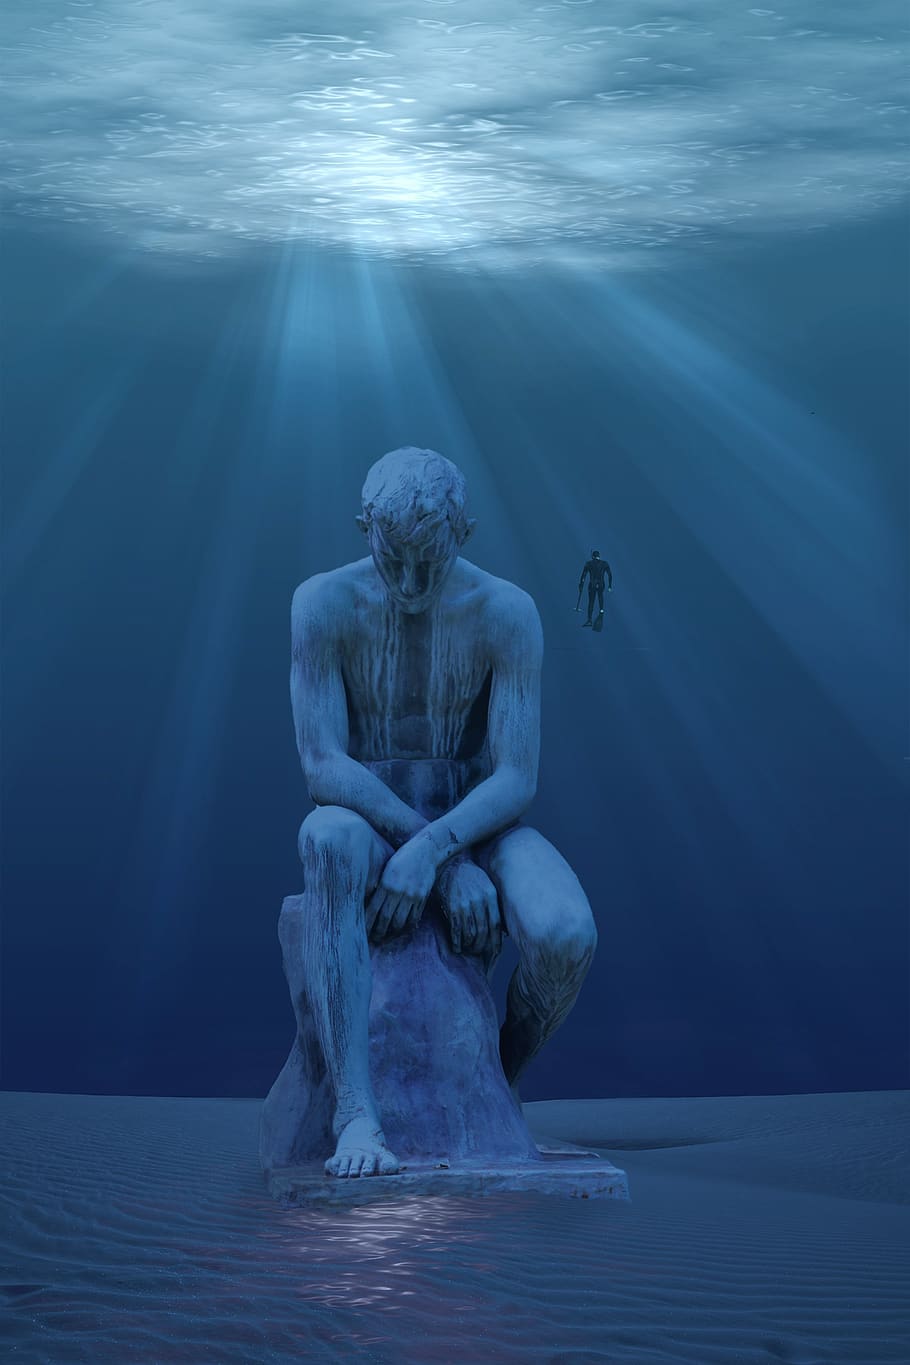 debaixo de água, fantasia, solitário, esquecido, mergulhador, estátua, águas profundas, mar, oceano, fundo do oceano